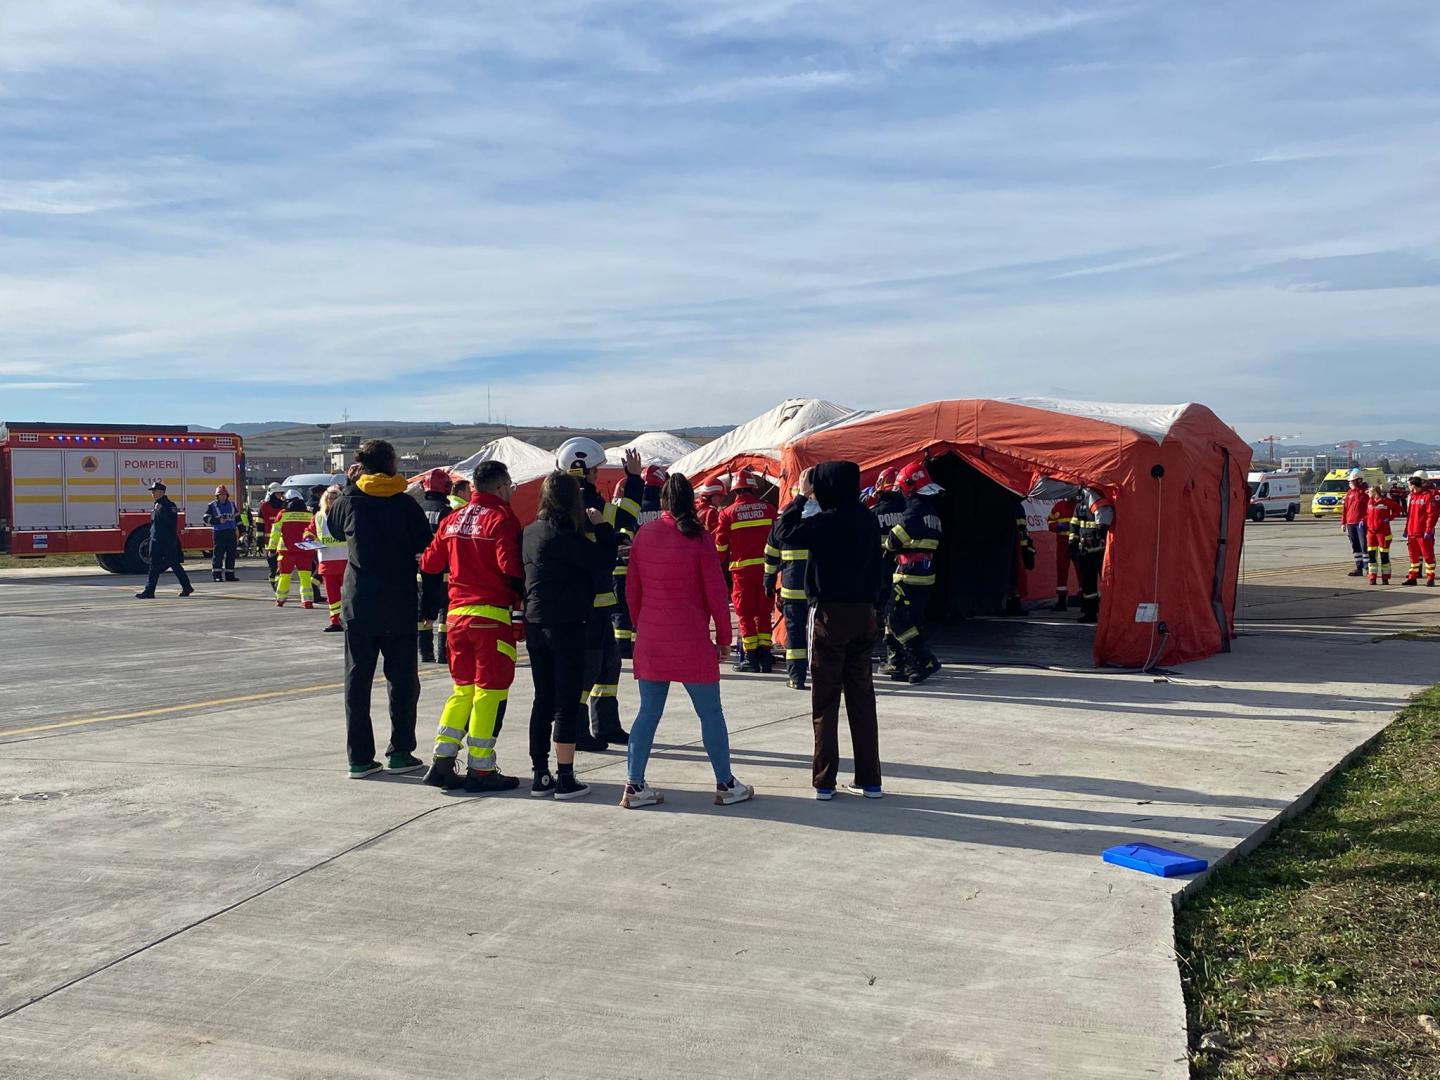 Simulare de accident aviatic pe Aeroportul Internațional "Avram Iancu" din Cluj cu zeci de răniți și morți. Peste 800 de oameni, implicați